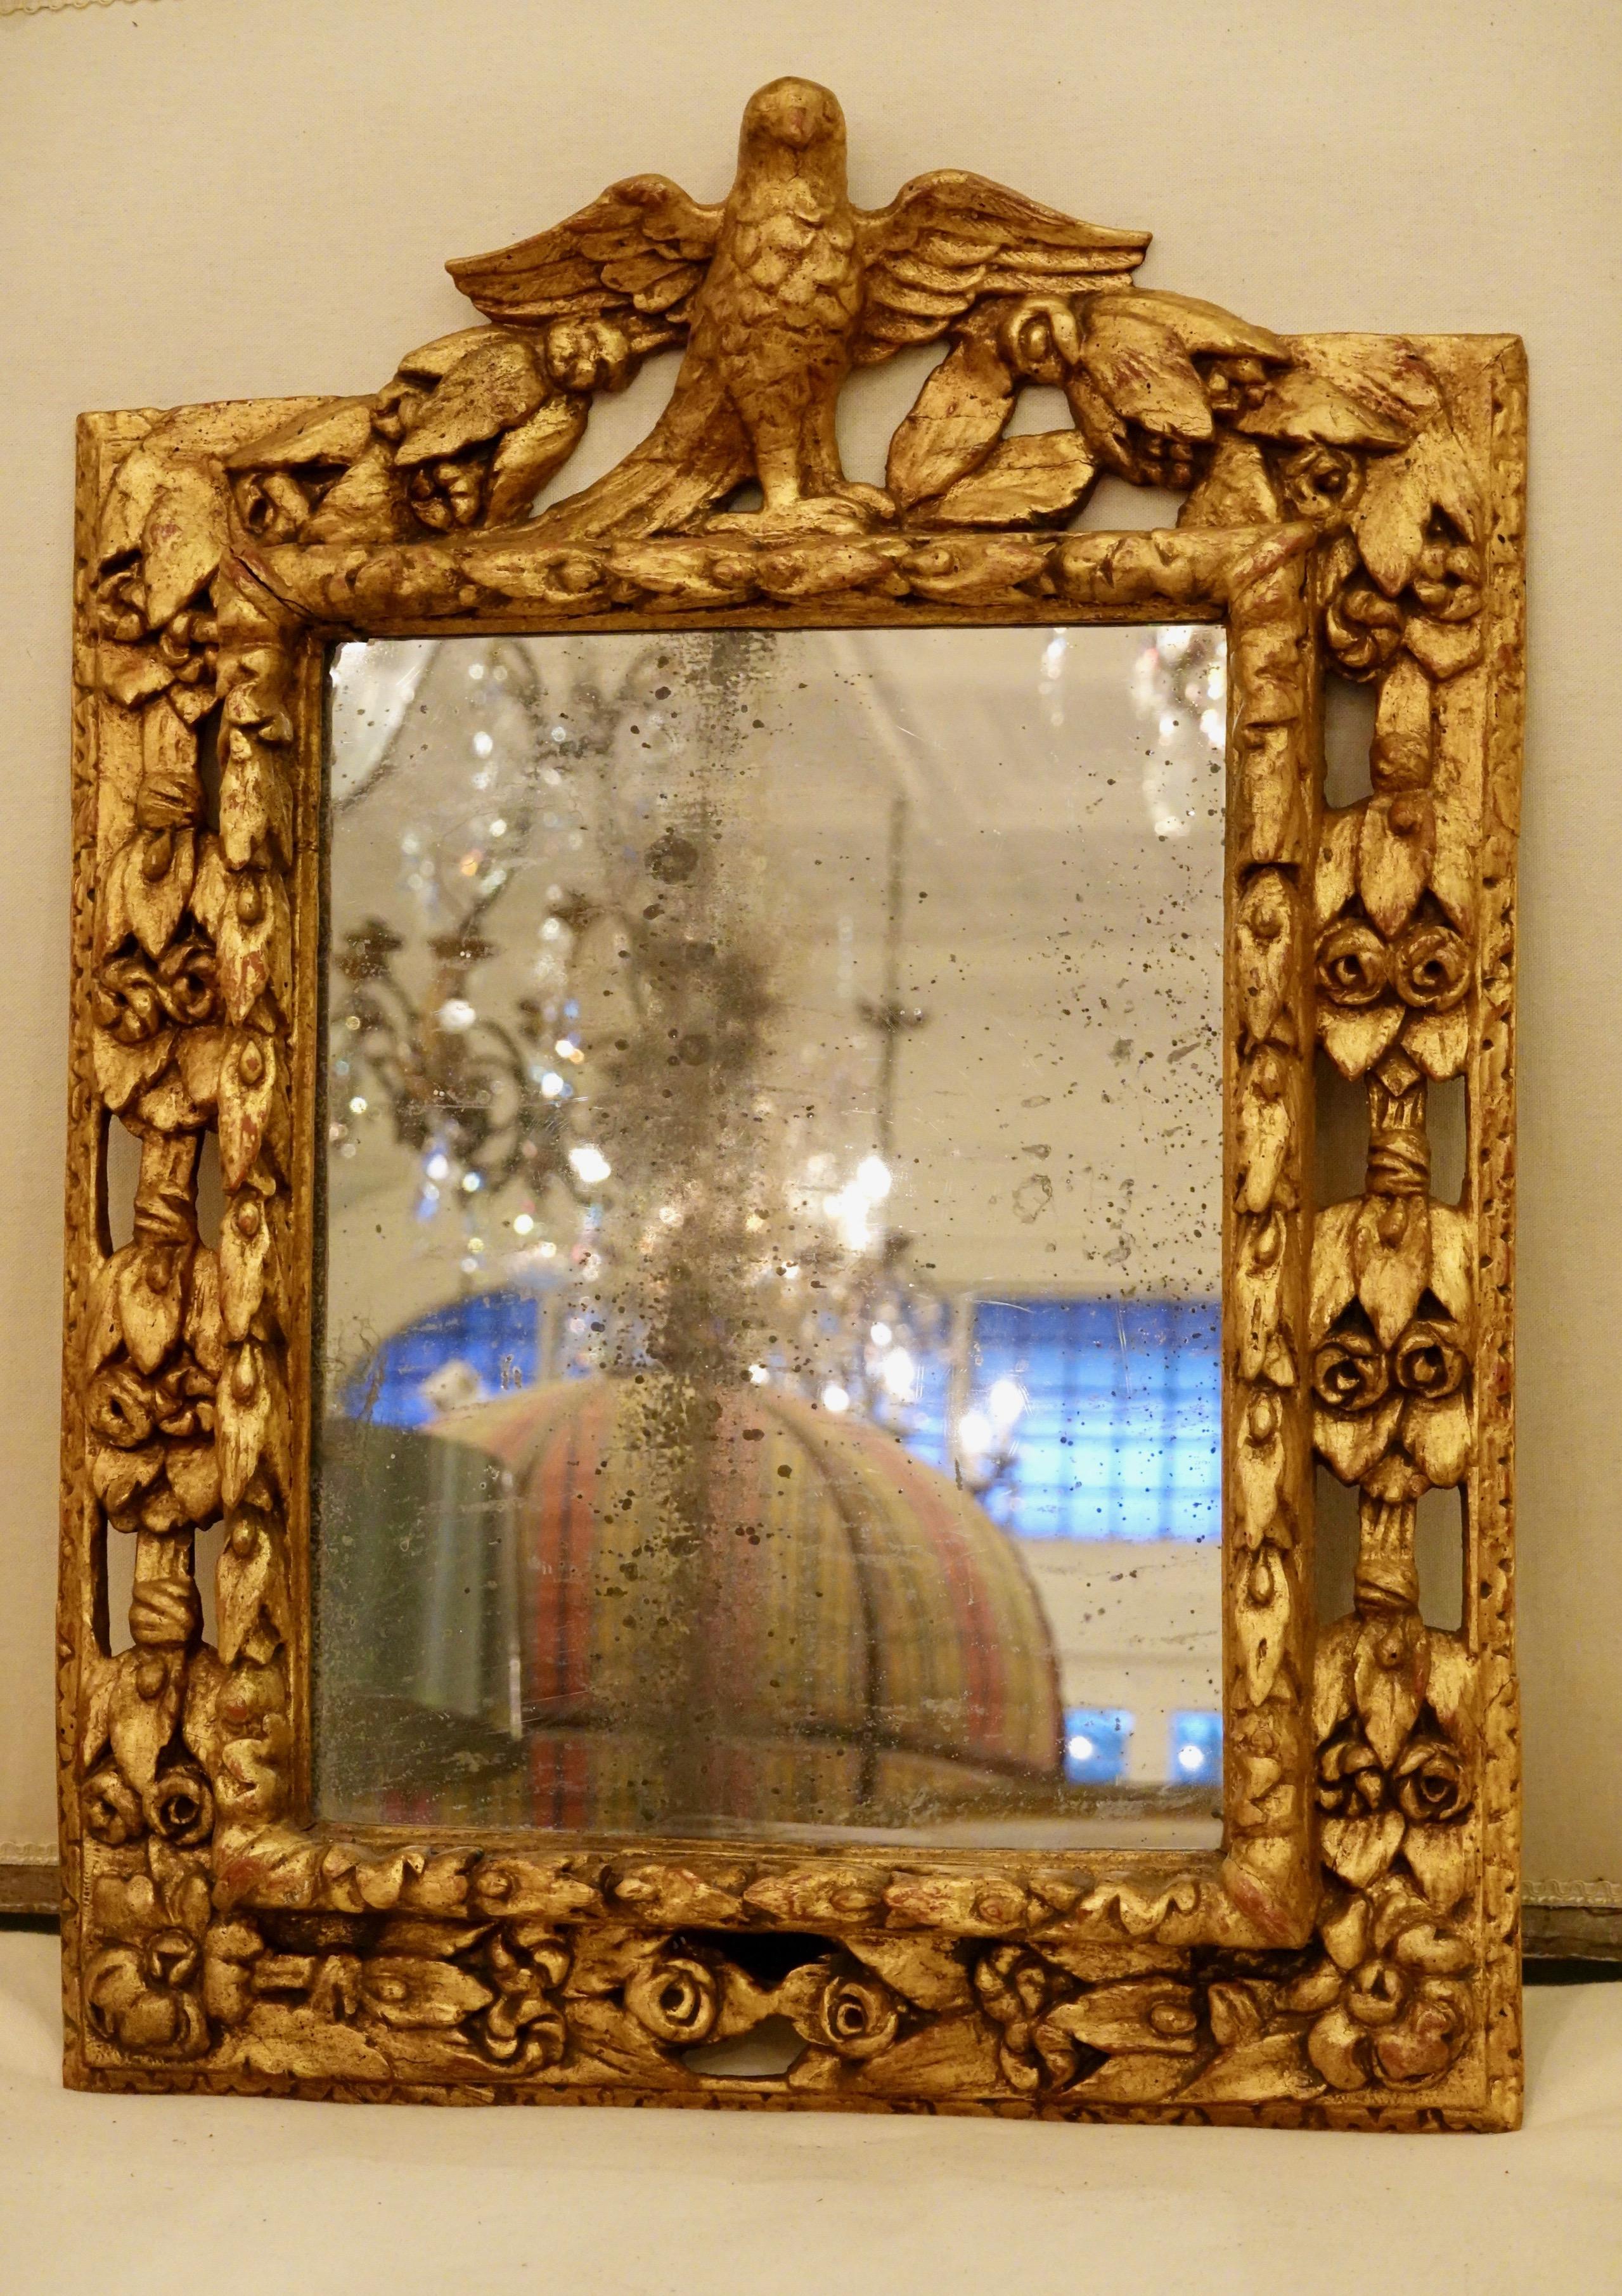 italienischer Vergoldungsspiegel aus dem 18. Jahrhundert mit handgeschnitztem Adler, Rosen, Blättern und anderen Details. Die Schnitzerei um den äußeren Umfang des Spiegels, um wirklich die Details hervorzuheben. Scheint originales Quecksilberglas